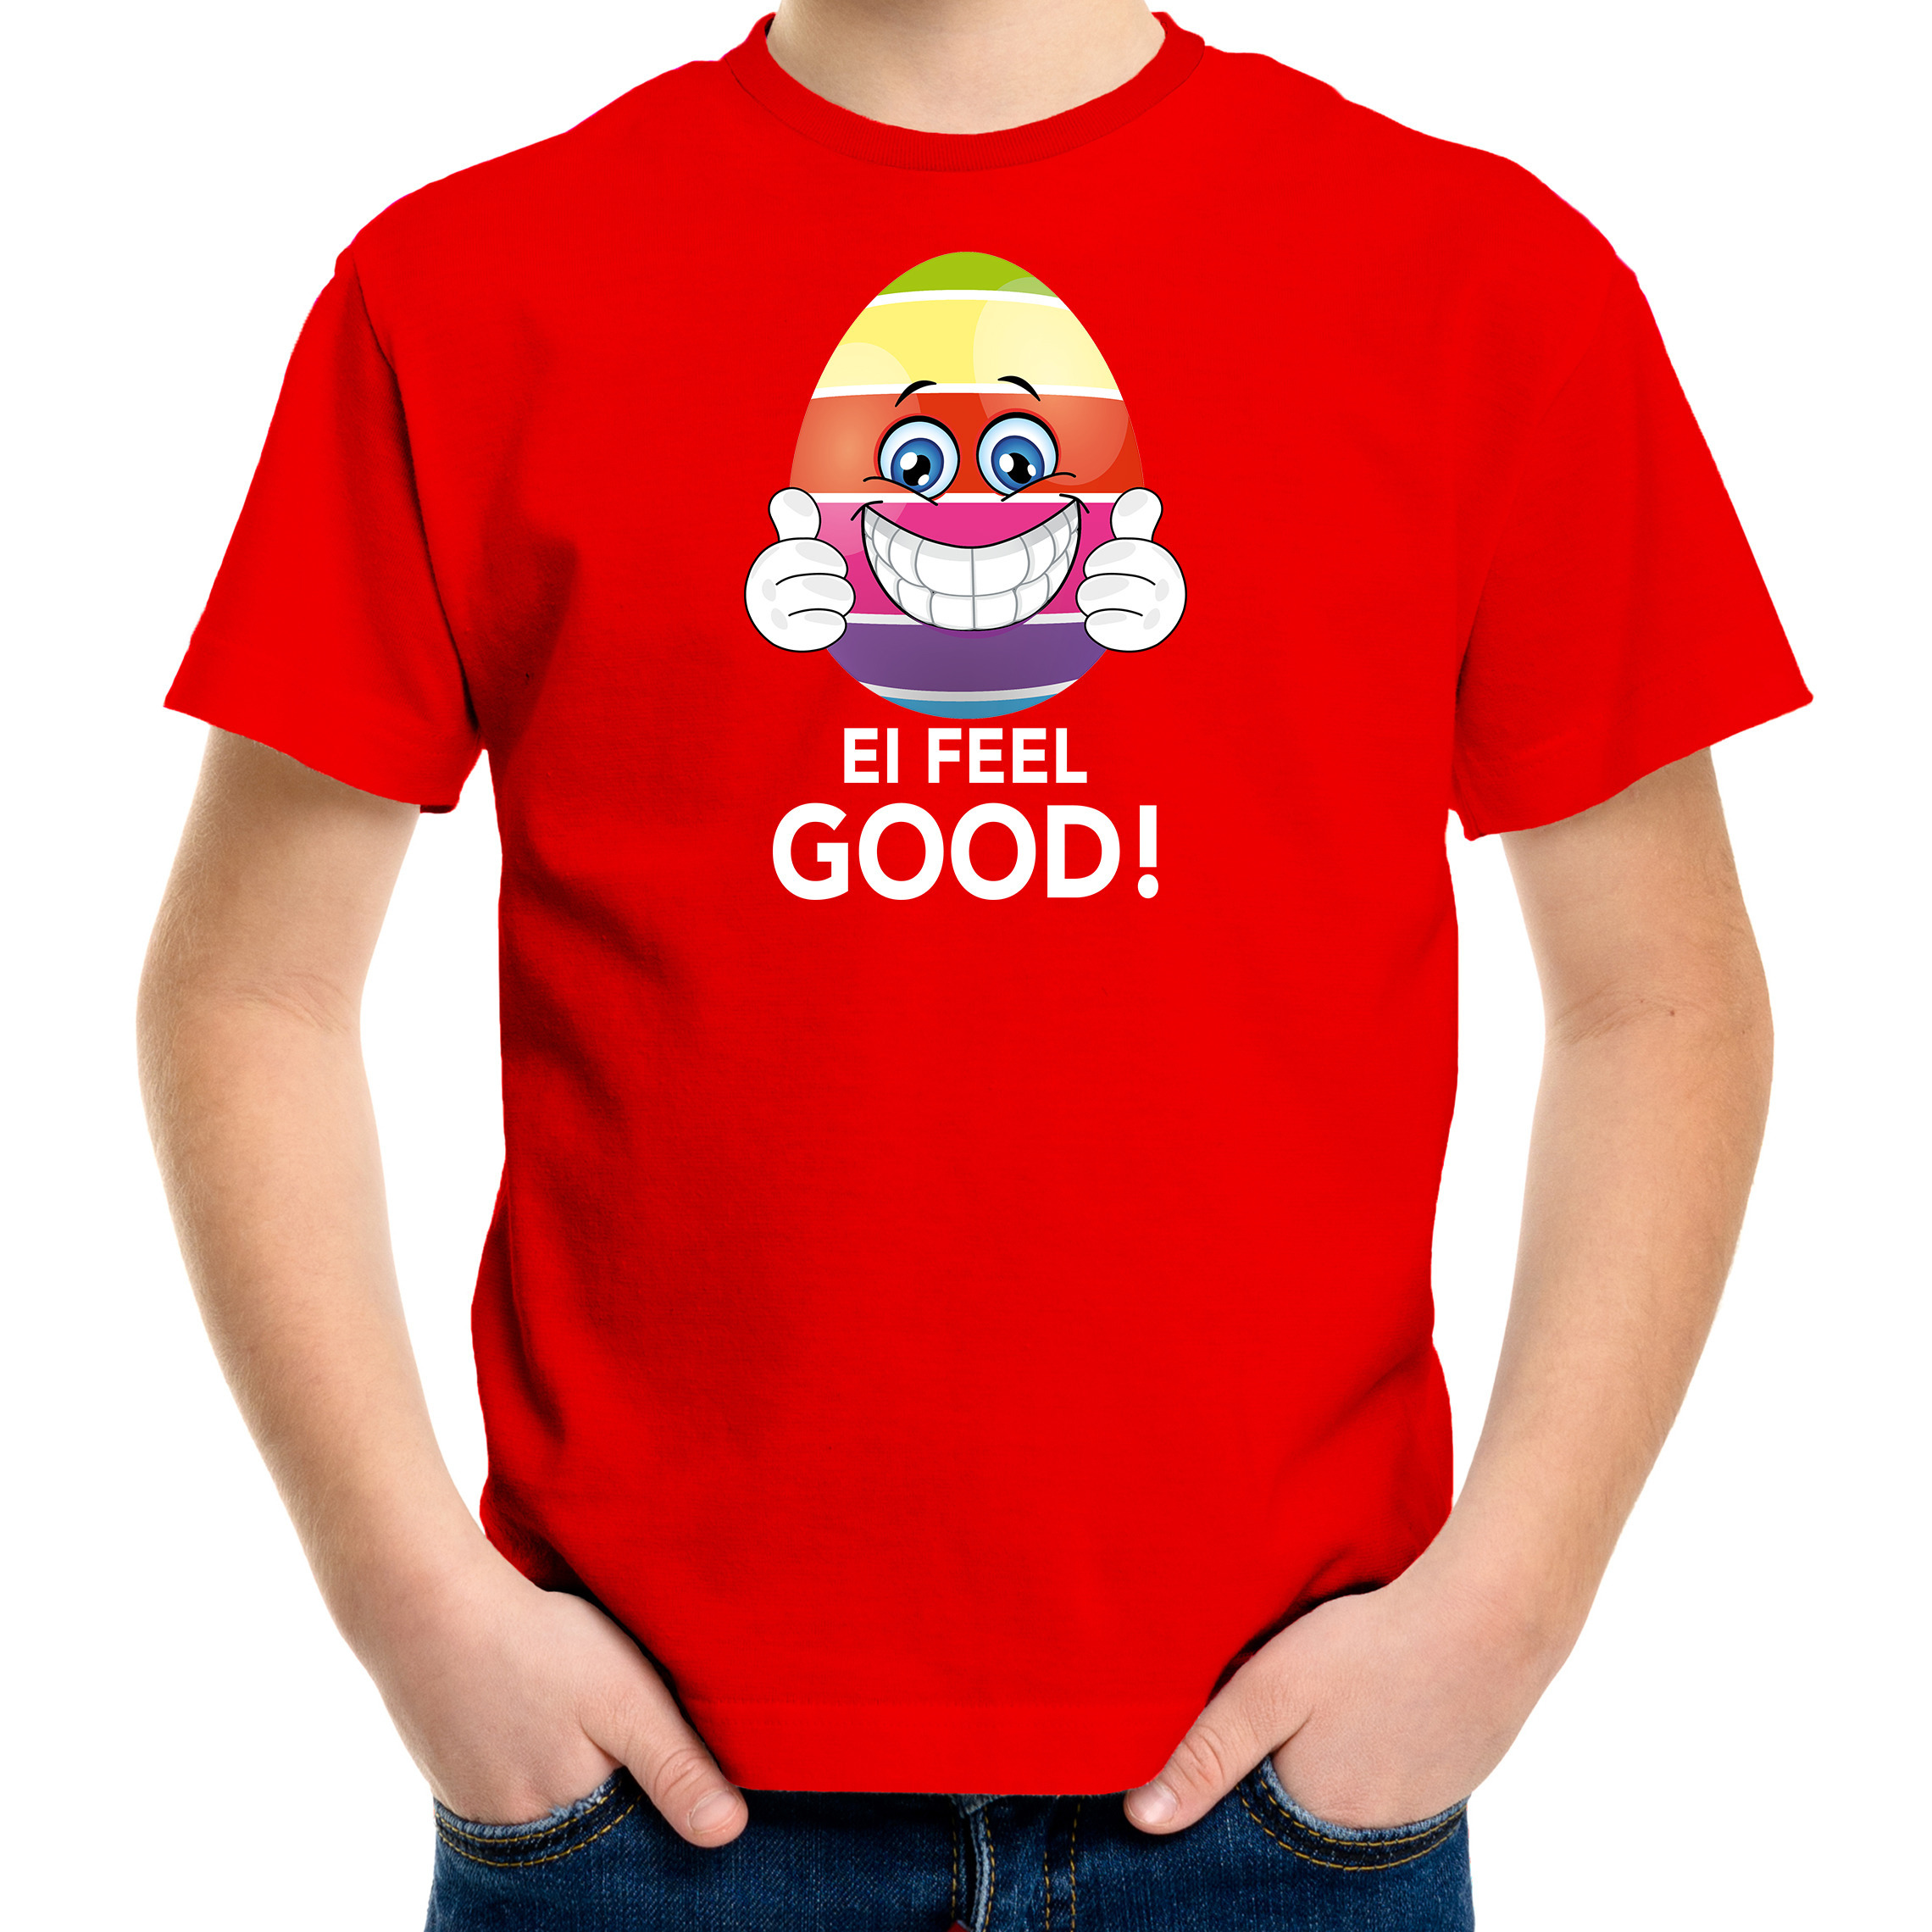 Vrolijk Paasei ei feel good t-shirt rood voor heren Paas kleding-outfit